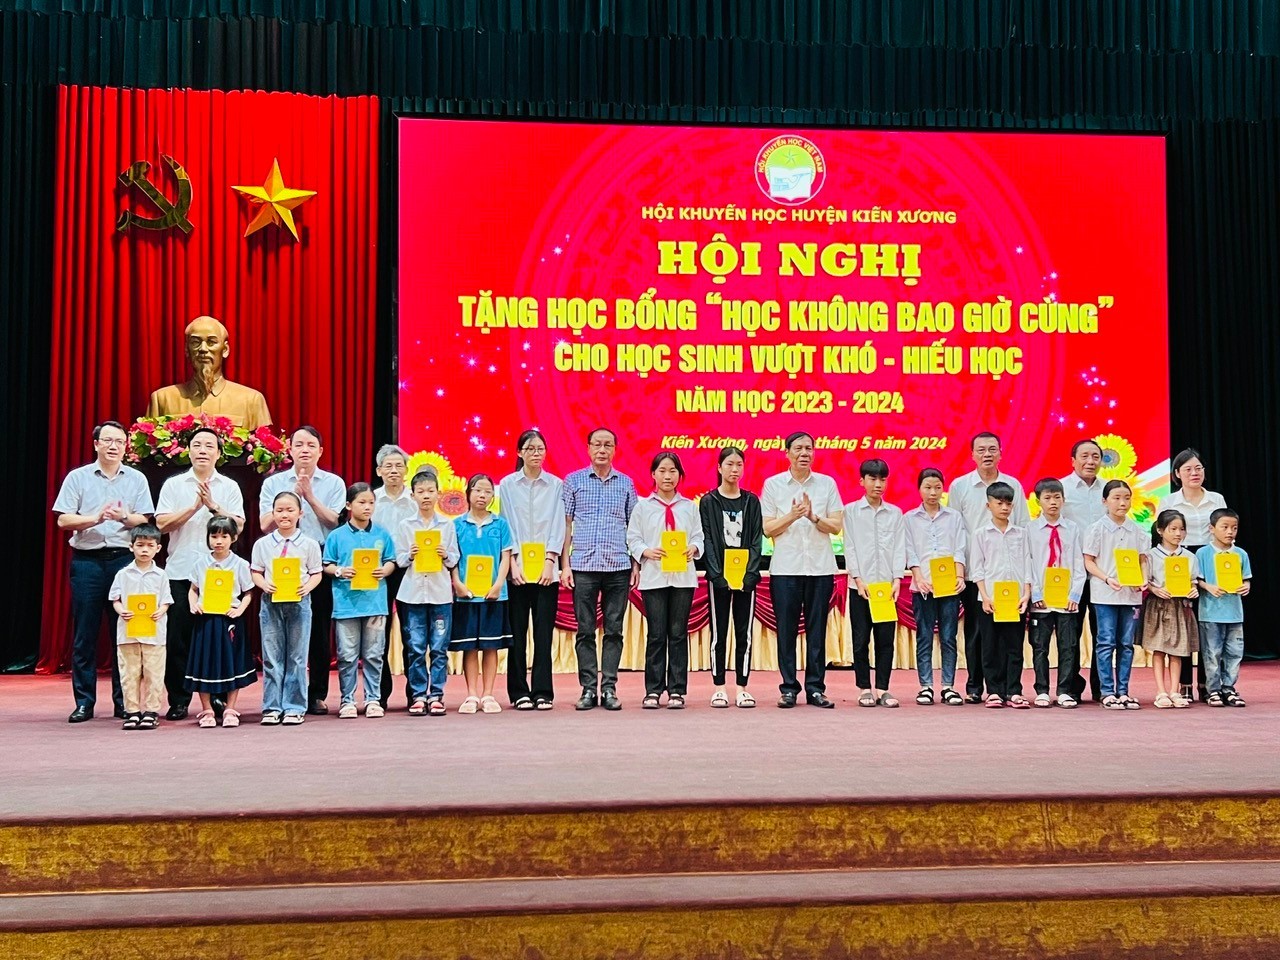 Thái Bình: Huyện Kiến Xương tổ chức trao học bổng “Học không bao giờ cùng” cho học sinh vượt khó - hiếu học